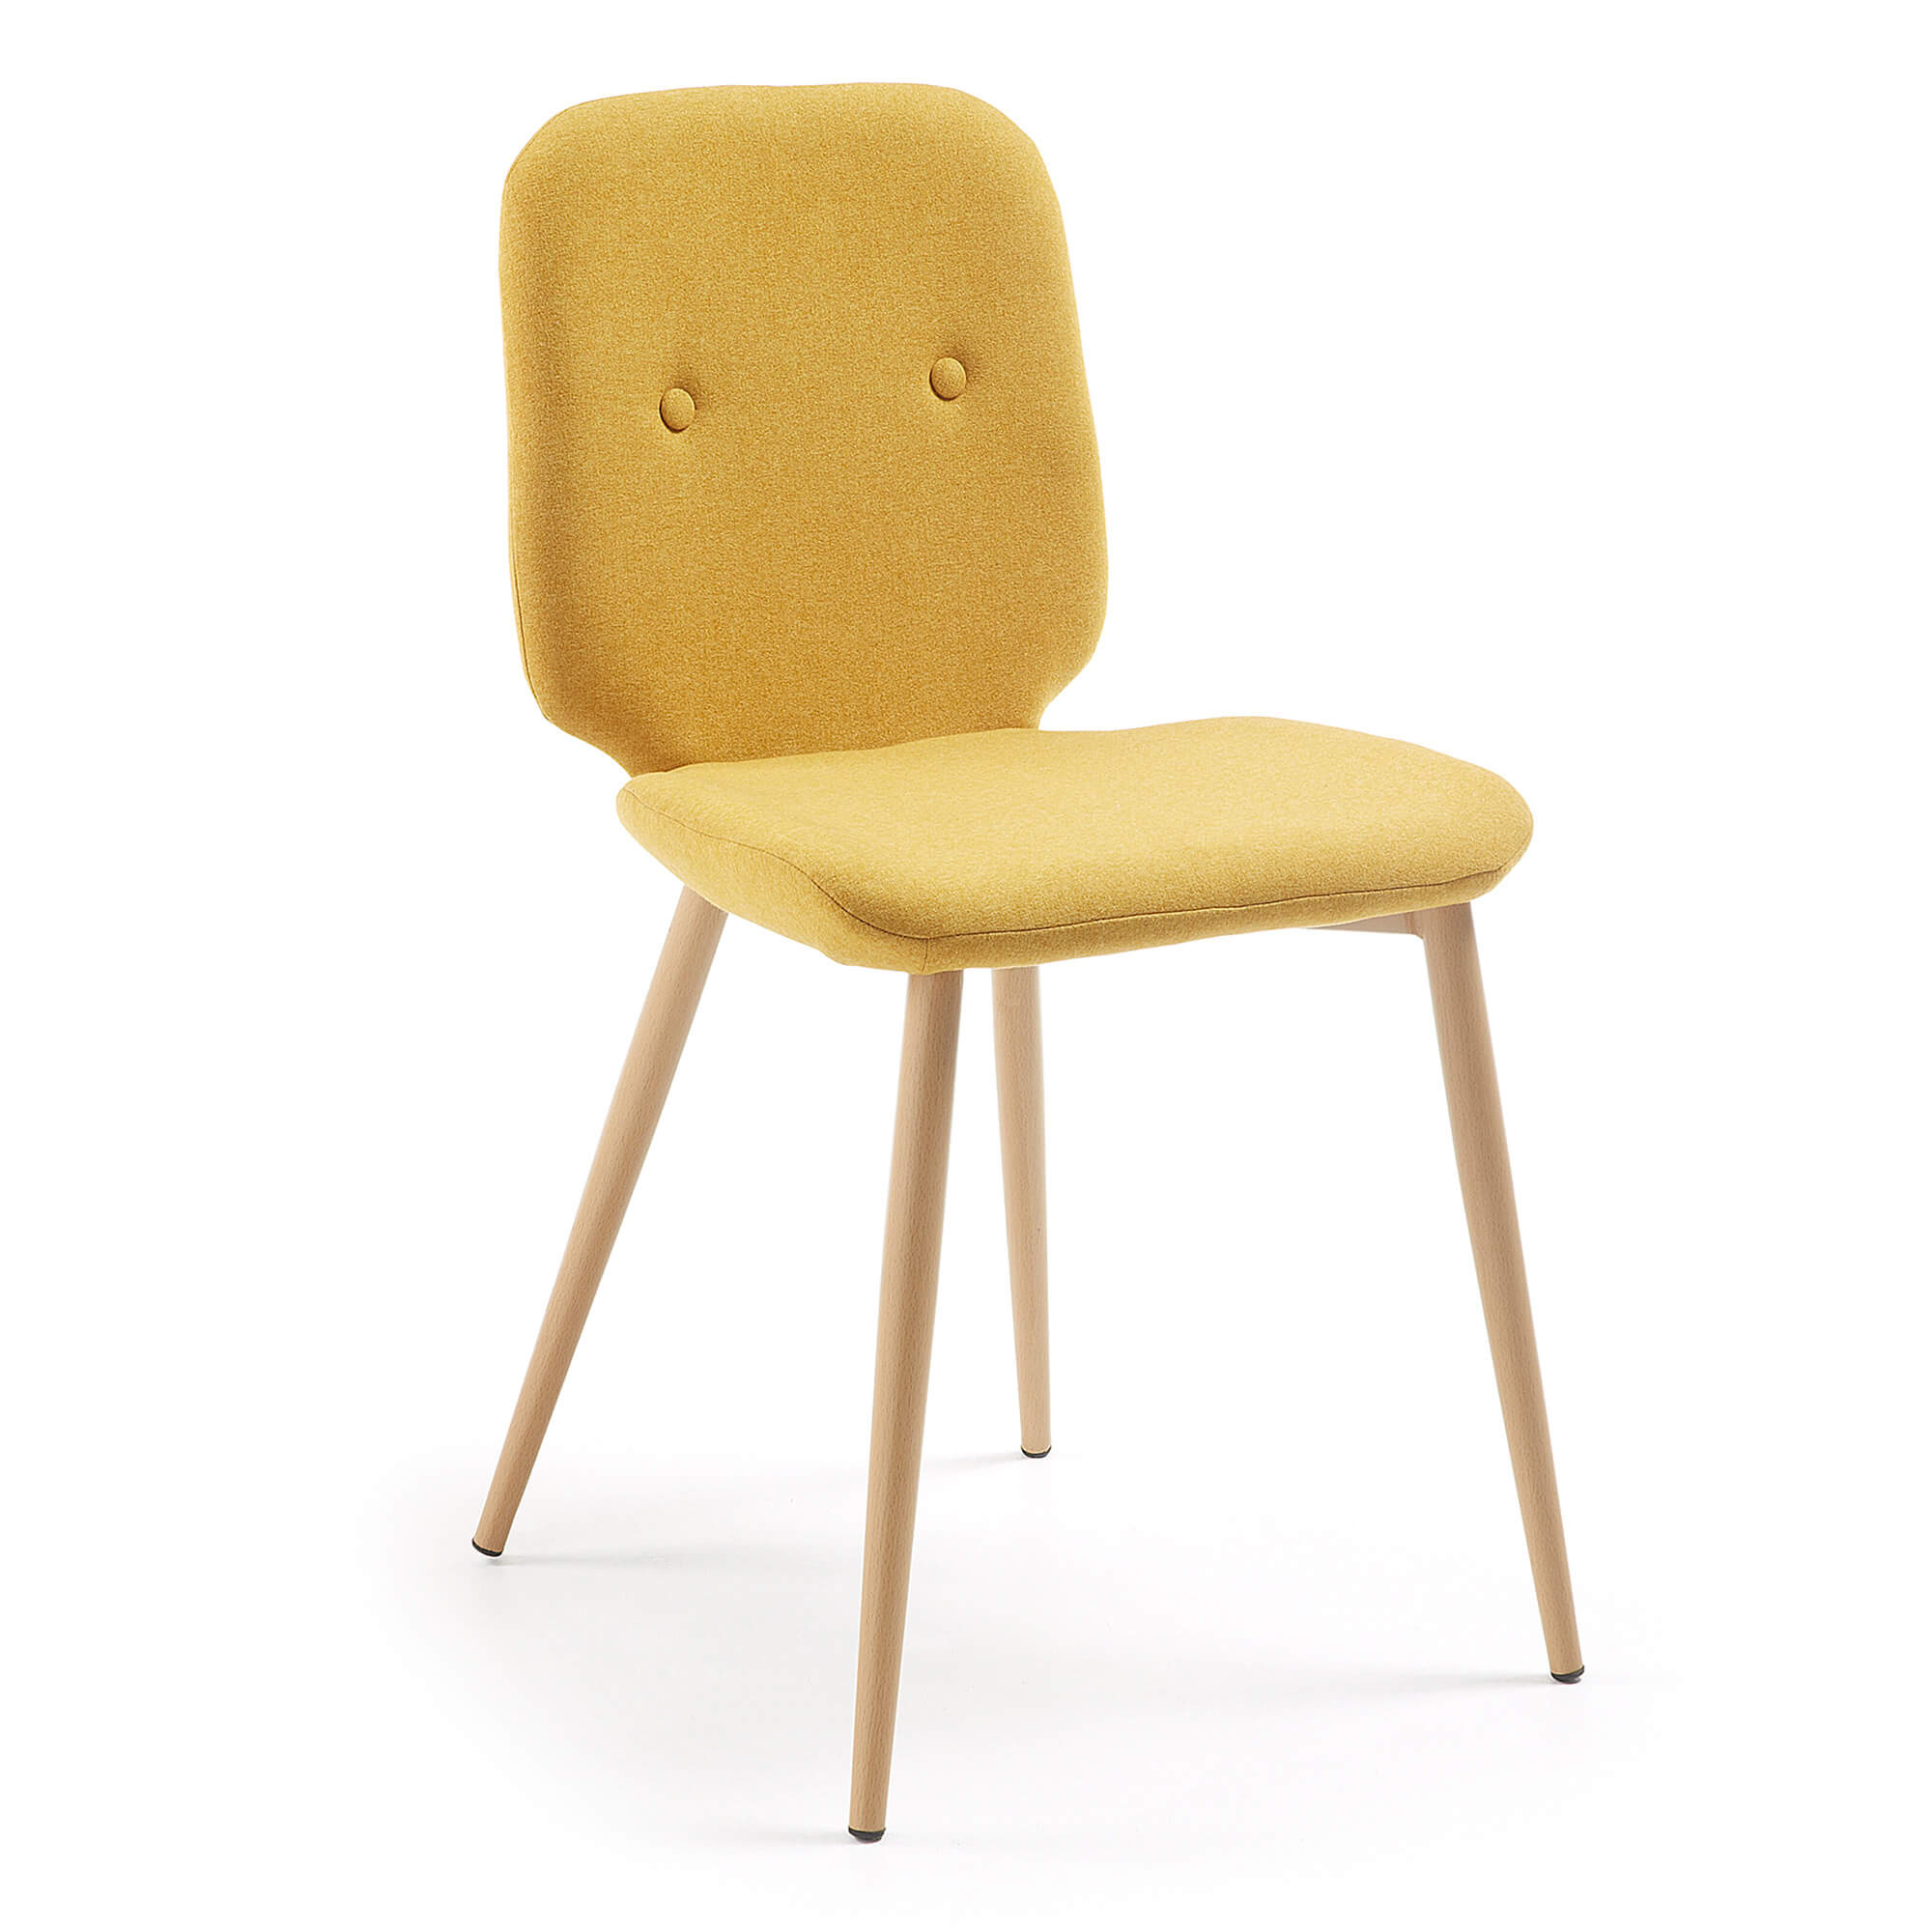 R DE ROOM silla de comedor tapizada en color mostaza. Silla de comedor cómoda. R DE ROOM silla de comedor tapizada en color mostaza. Silla de comedor cómoda. 